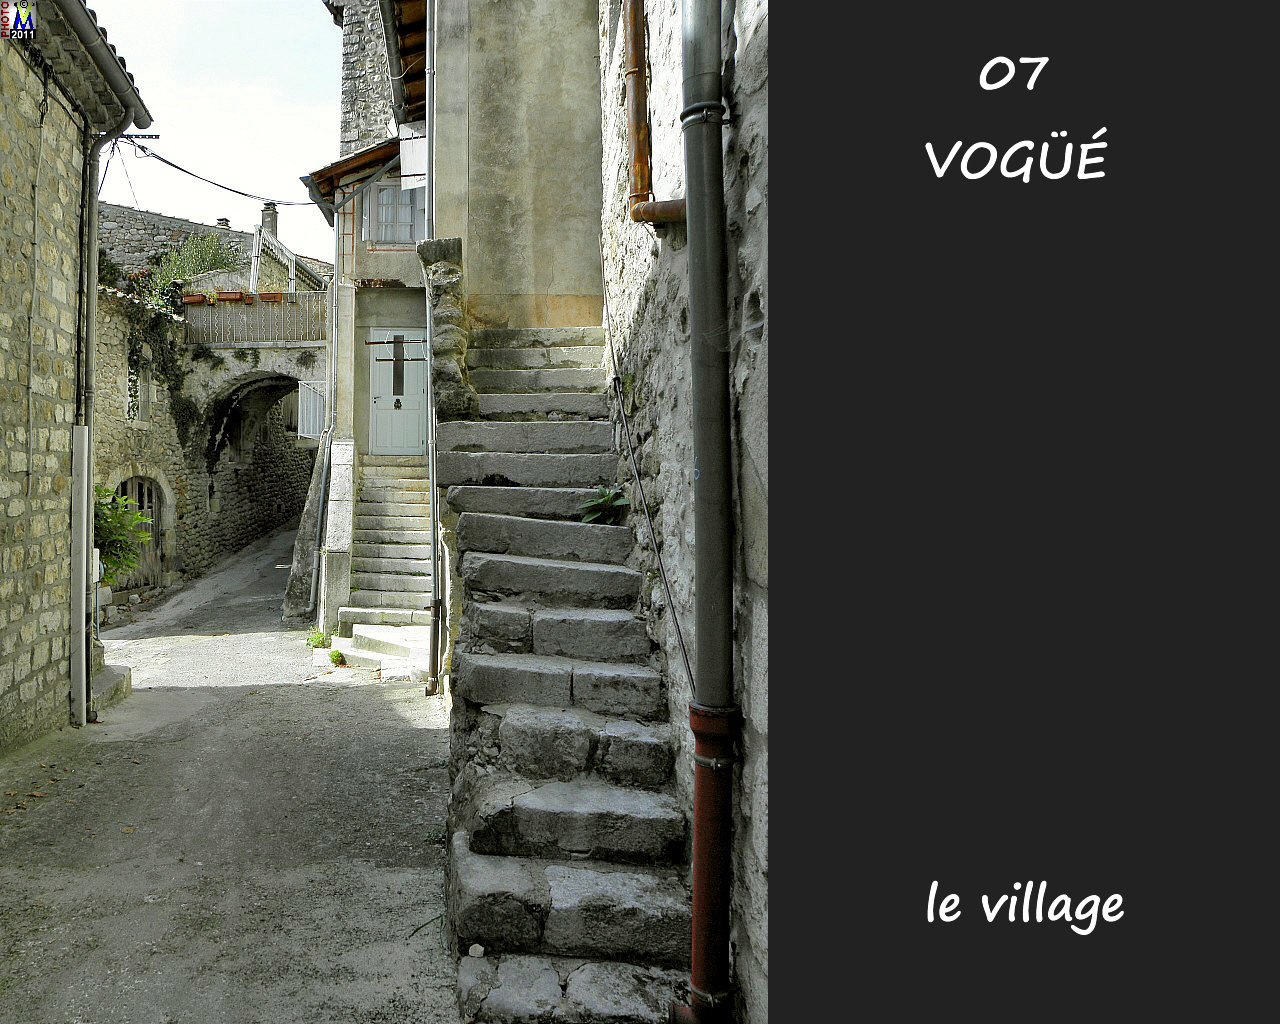 07VOGUE_village_140.jpg